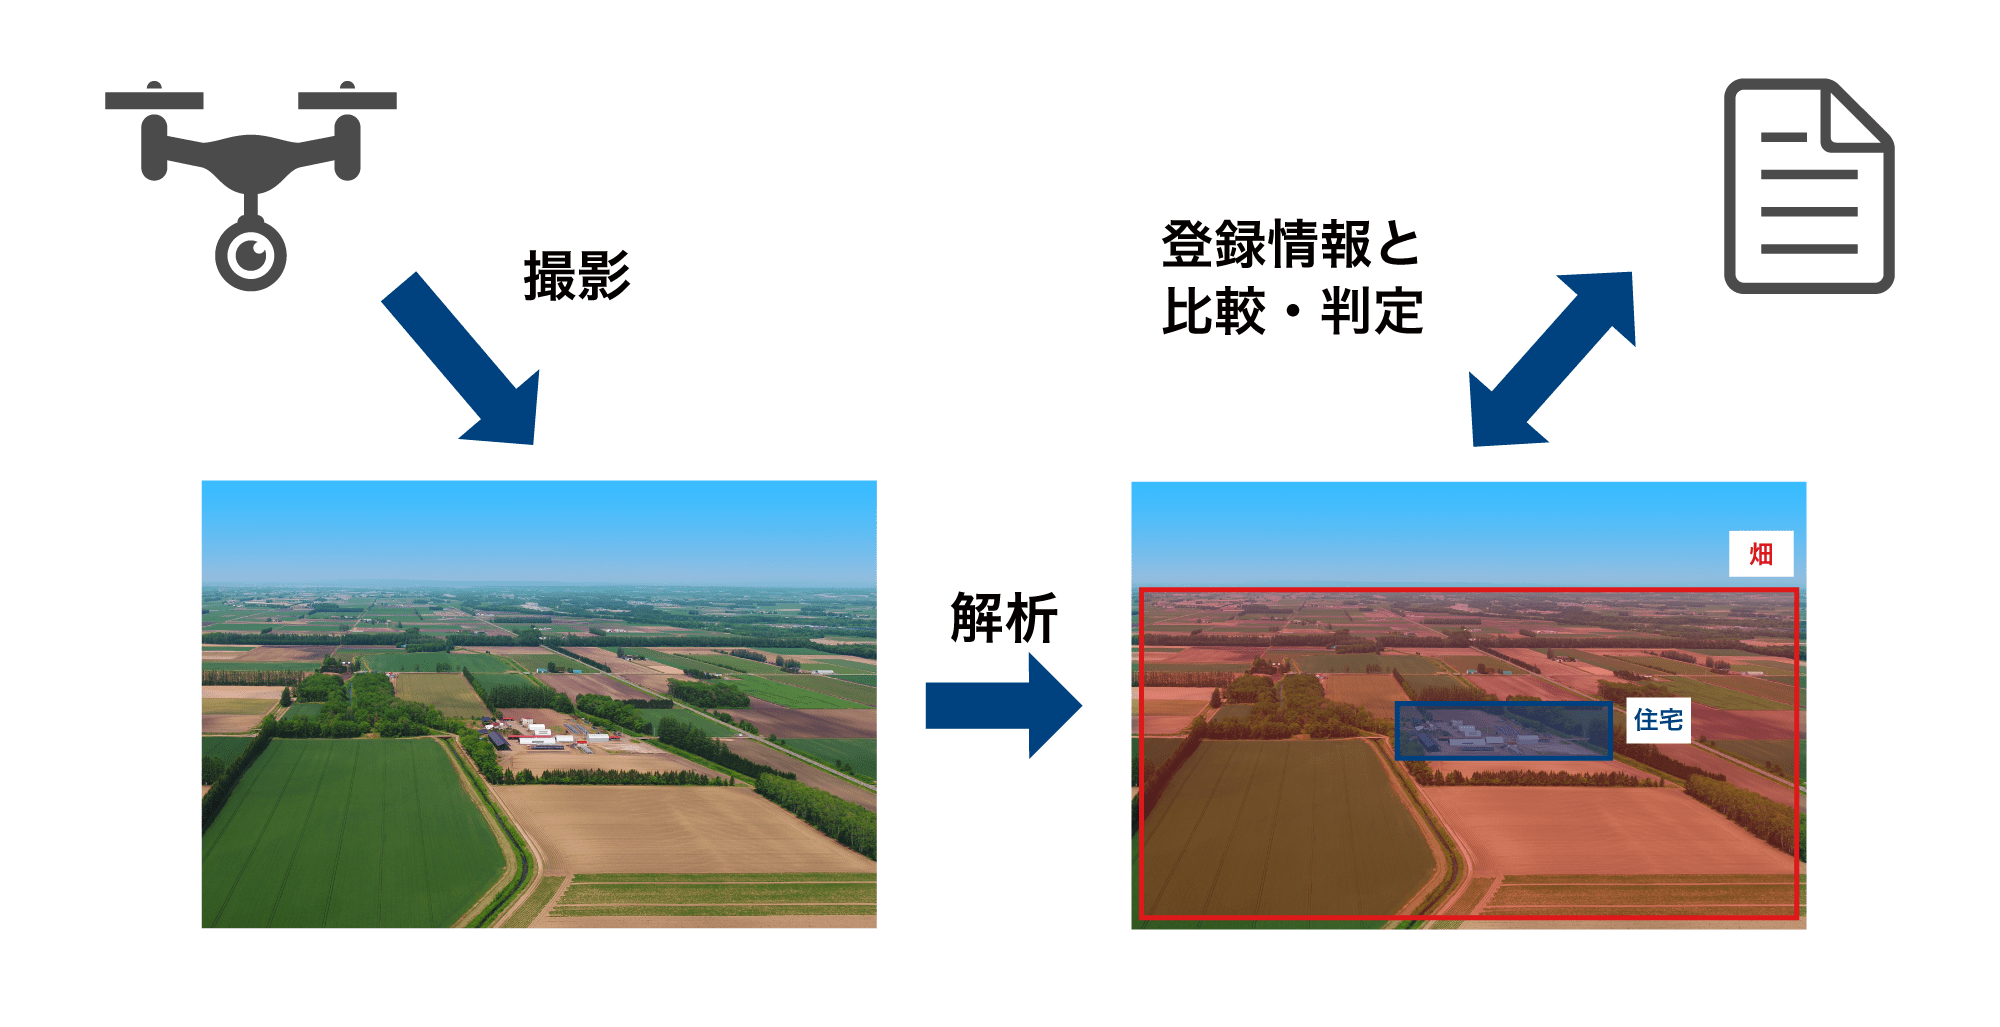 土地用途判定システムの活用イメージ